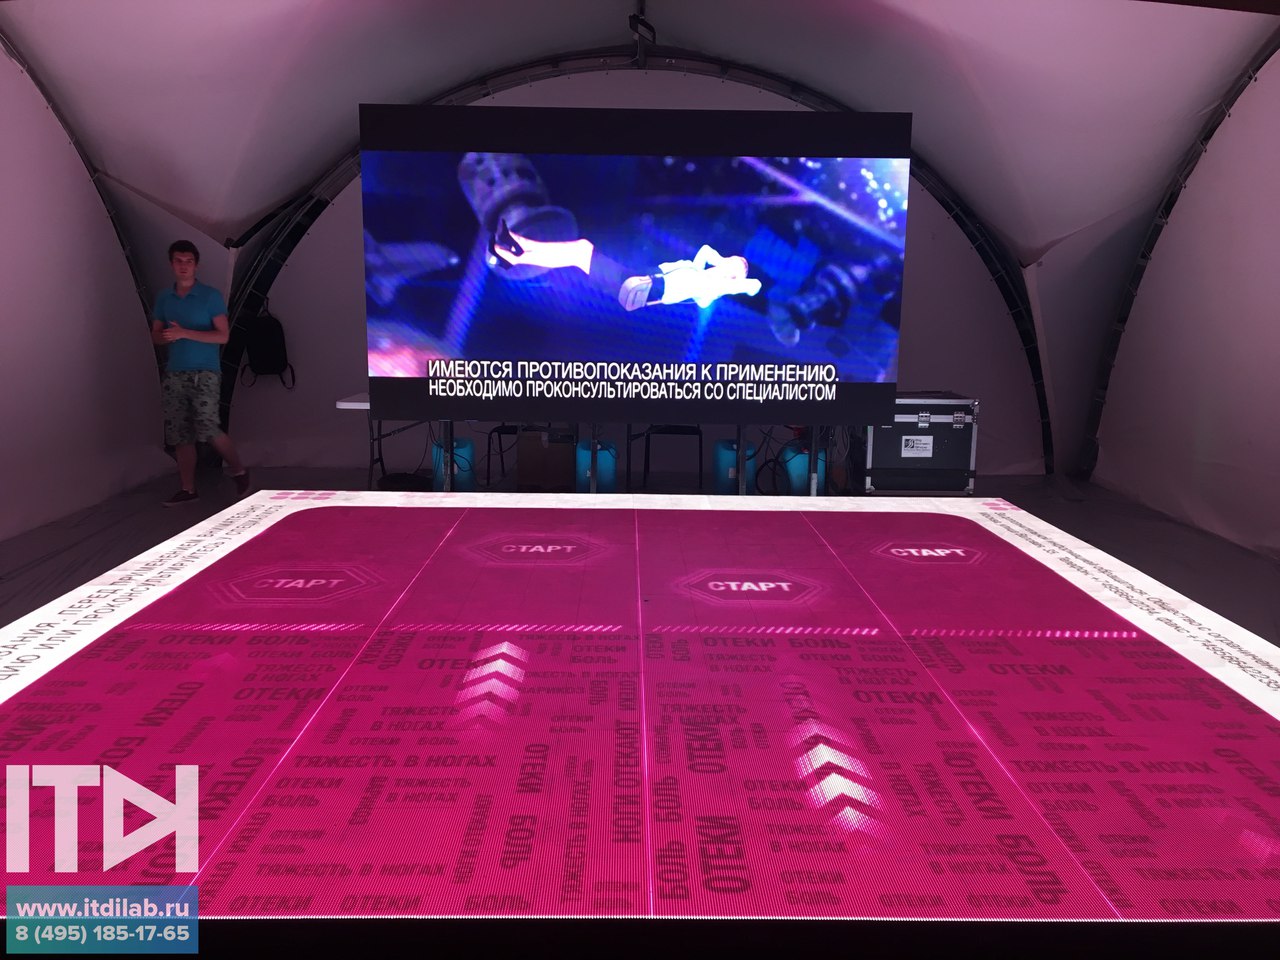 Посетители стенда могли проверить свой танцевальный навык, повторяя движения с большого экрана на интерактивном полу